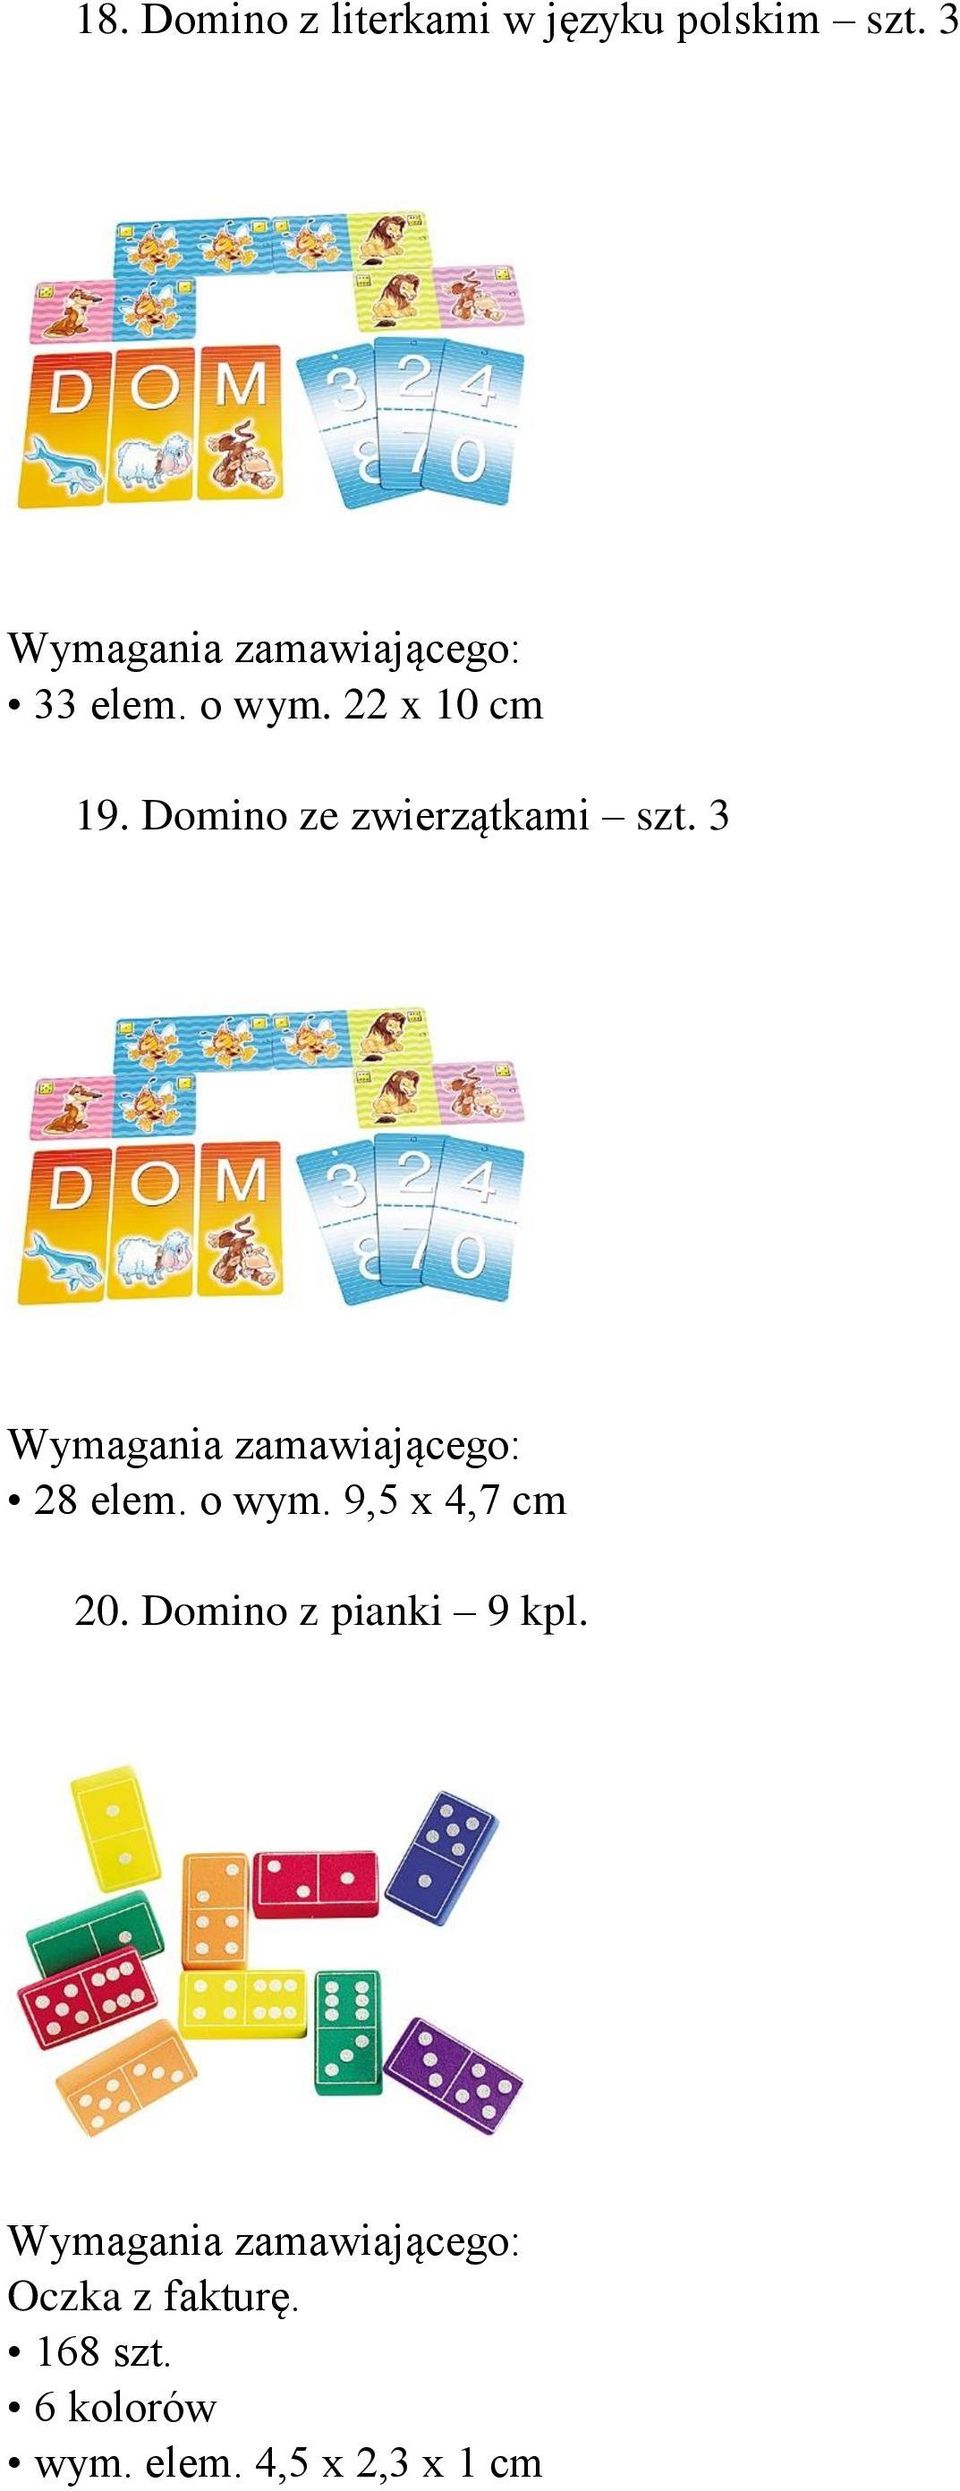 3 28 elem. o wym. 9,5 x 4,7 cm 20. Domino z pianki 9 kpl.